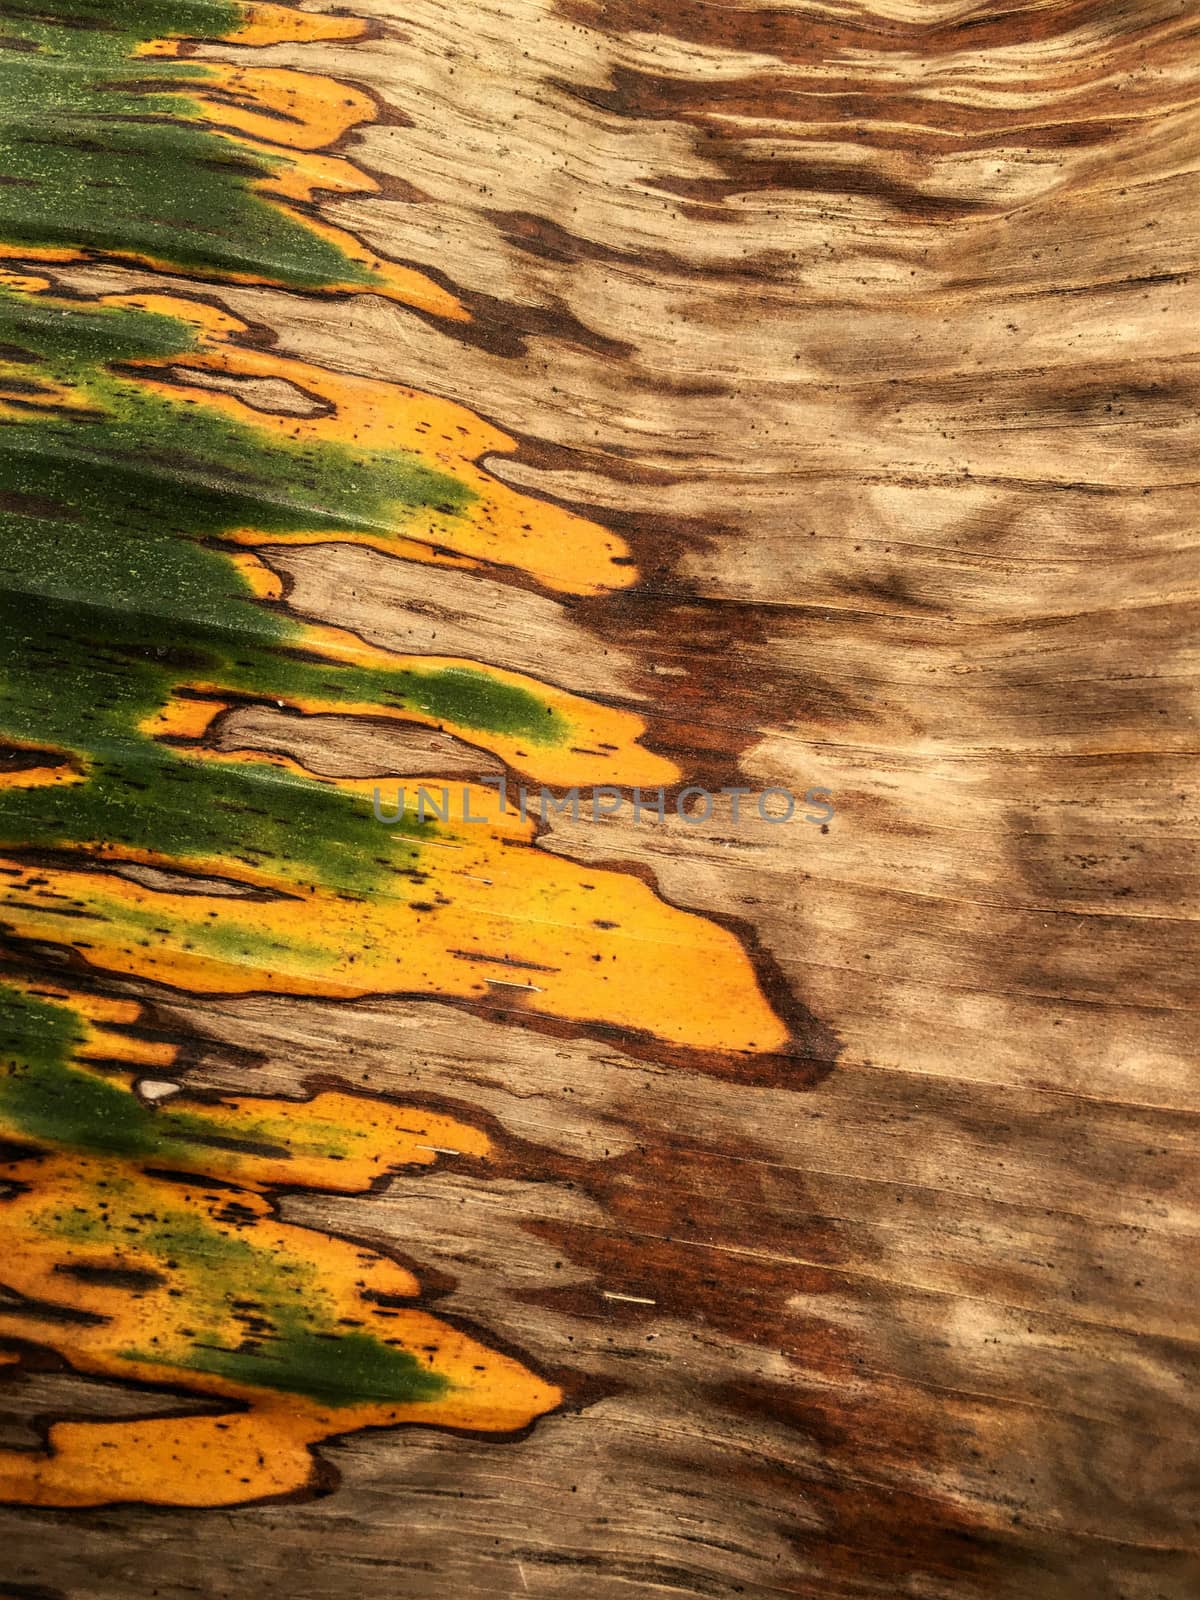 Texture on banana leaf from banana tree. by e22xua